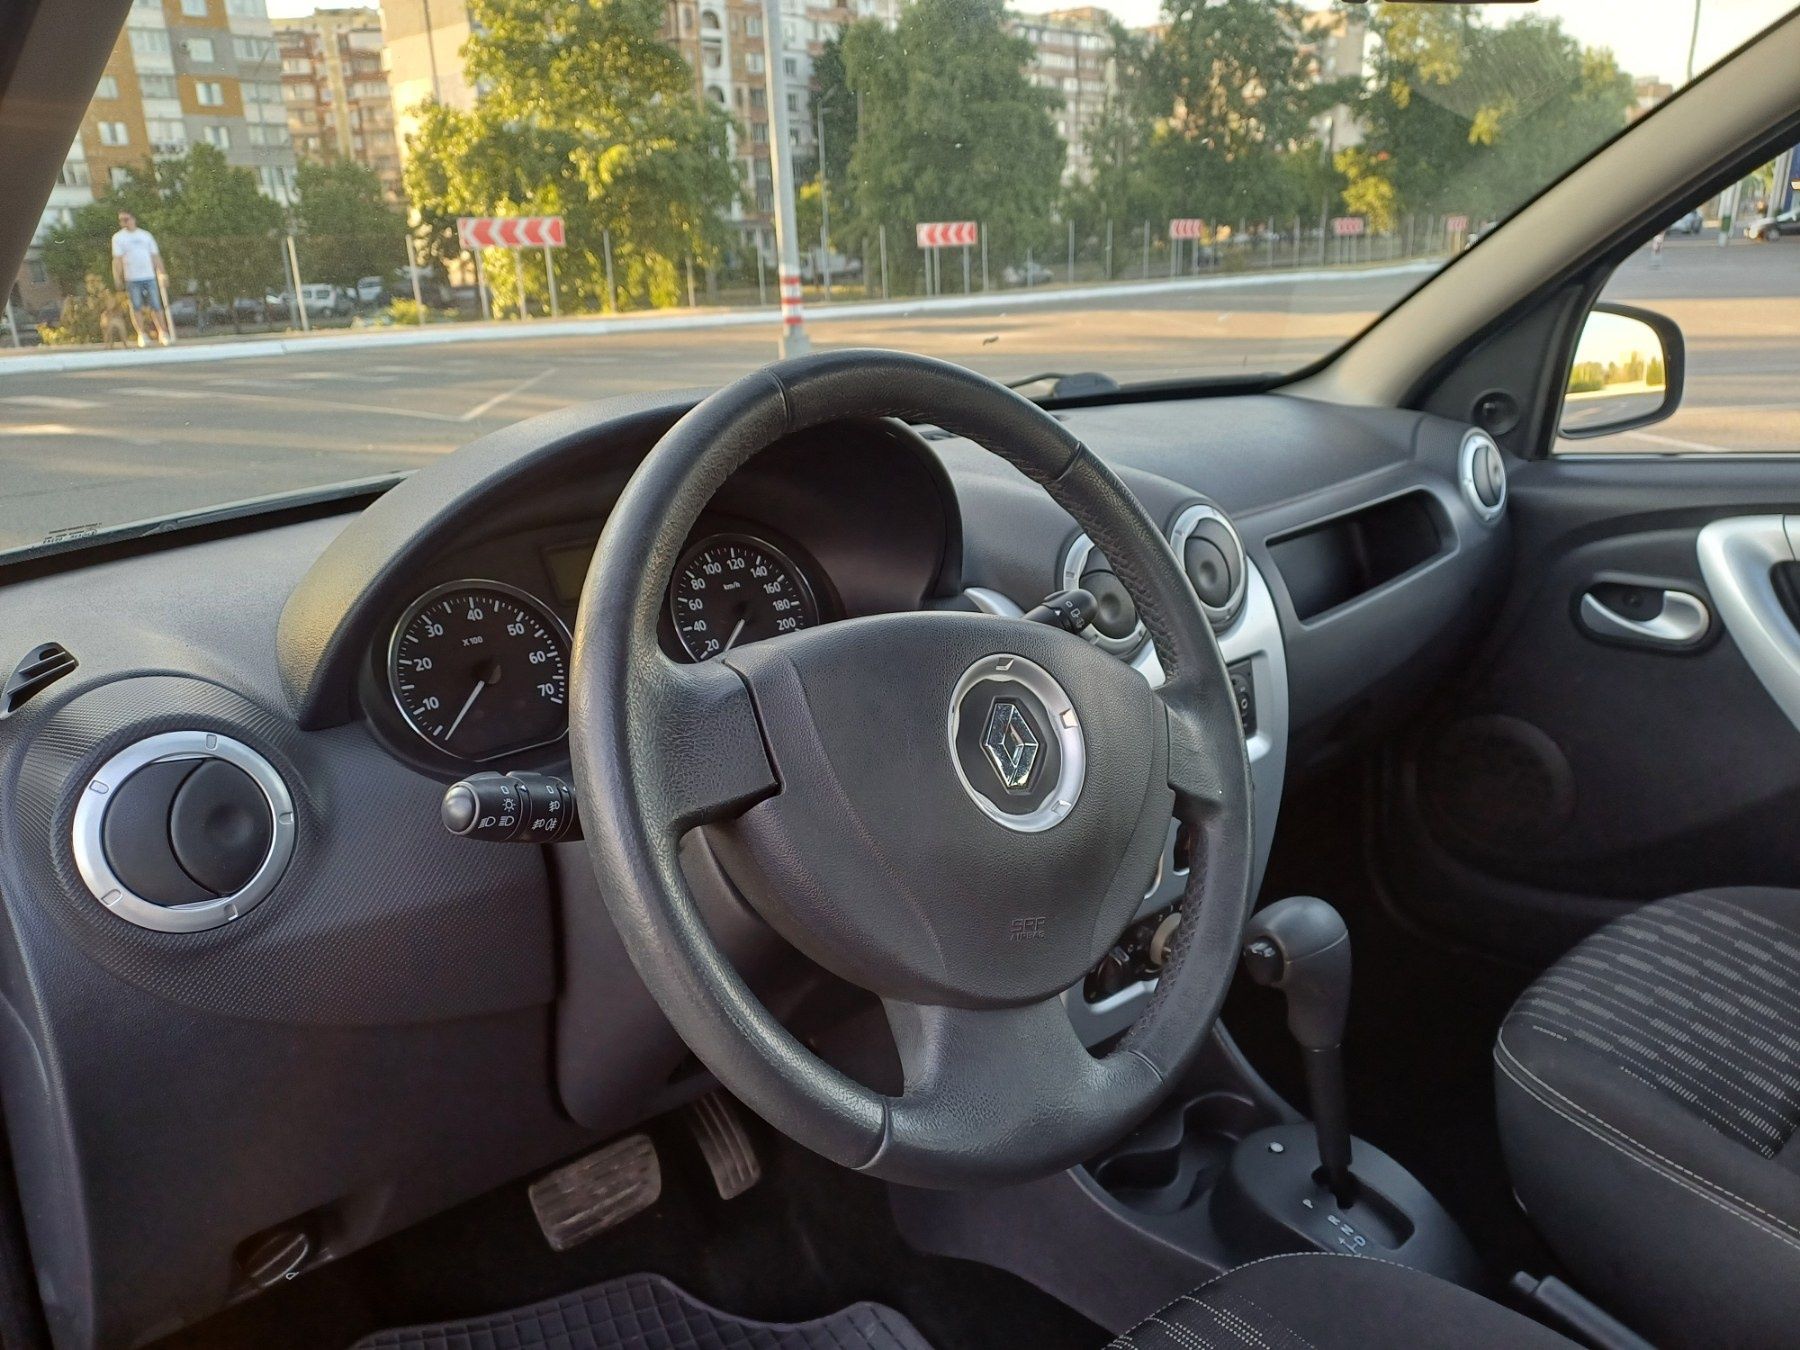 Renault Sandero 2011 офiцiйна